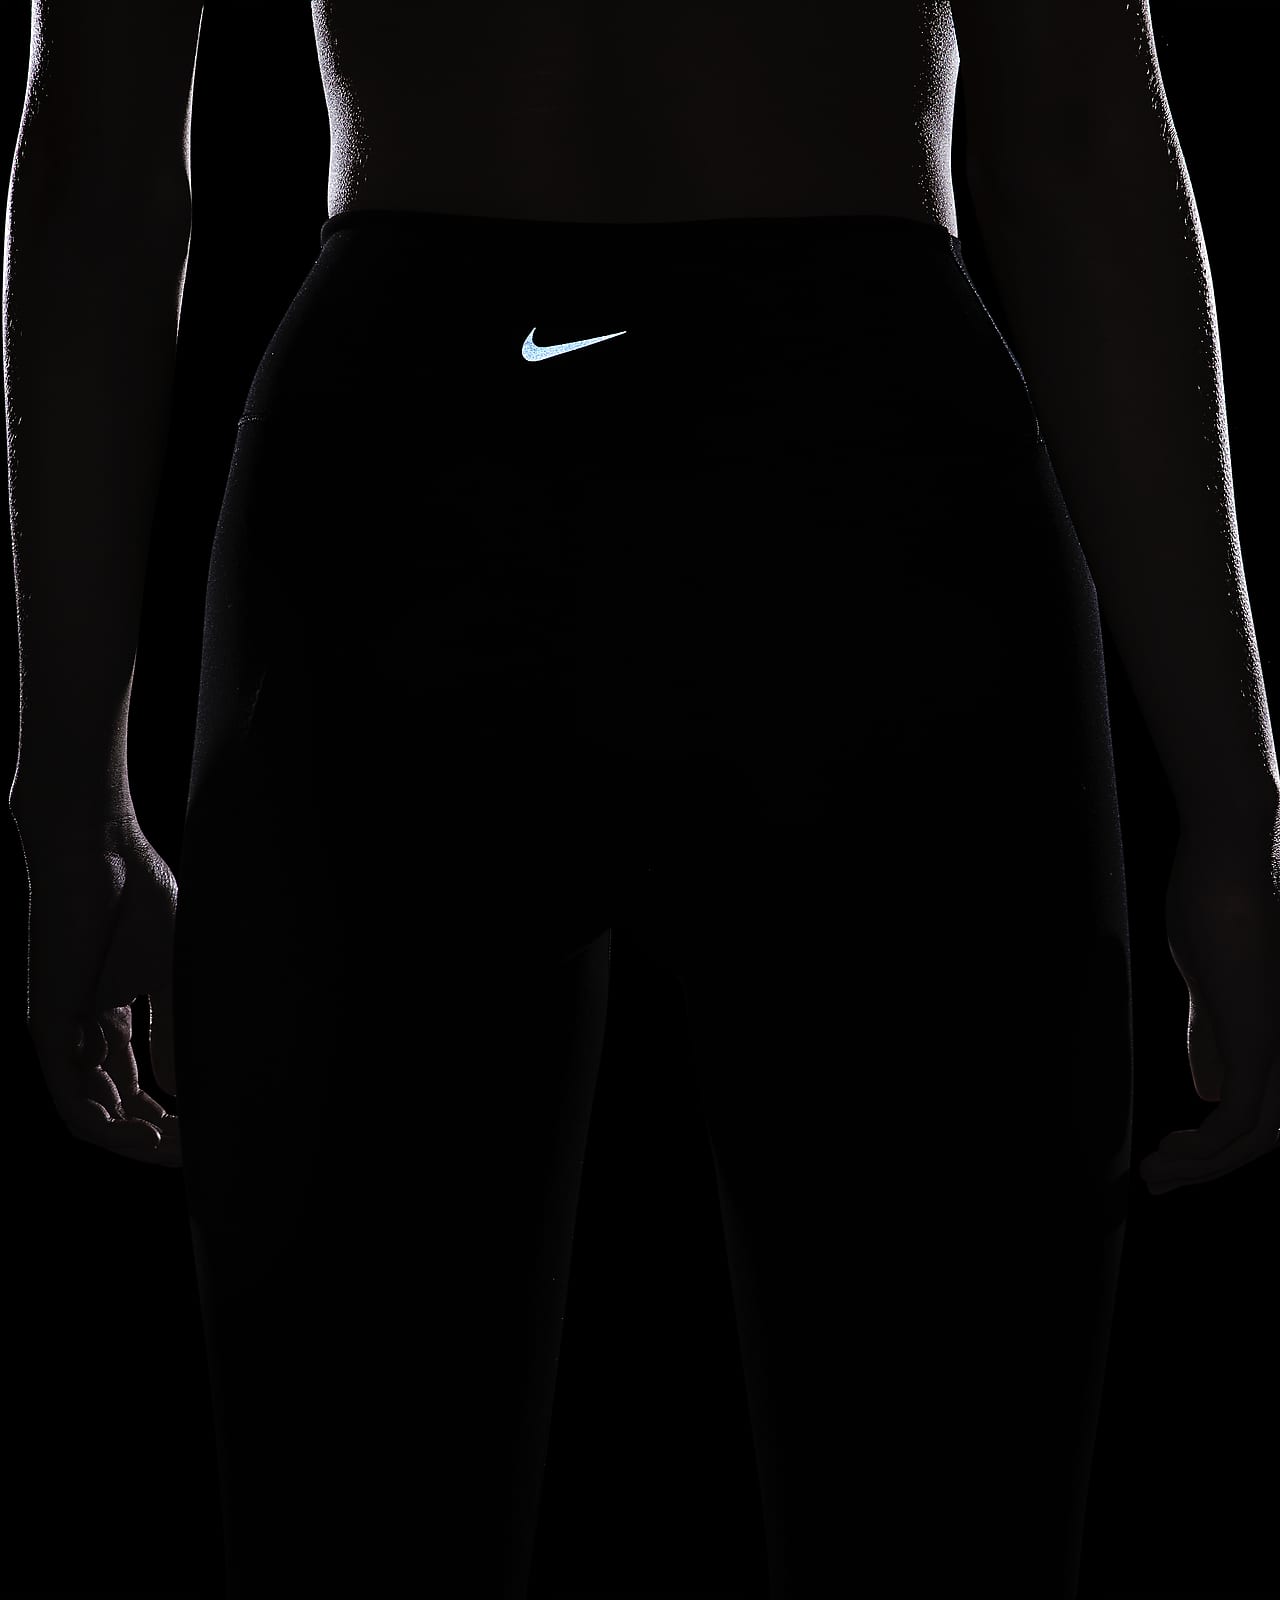 Nike One magas derekú, teljes hosszúságú, felsliccelt szegélyű női leggings